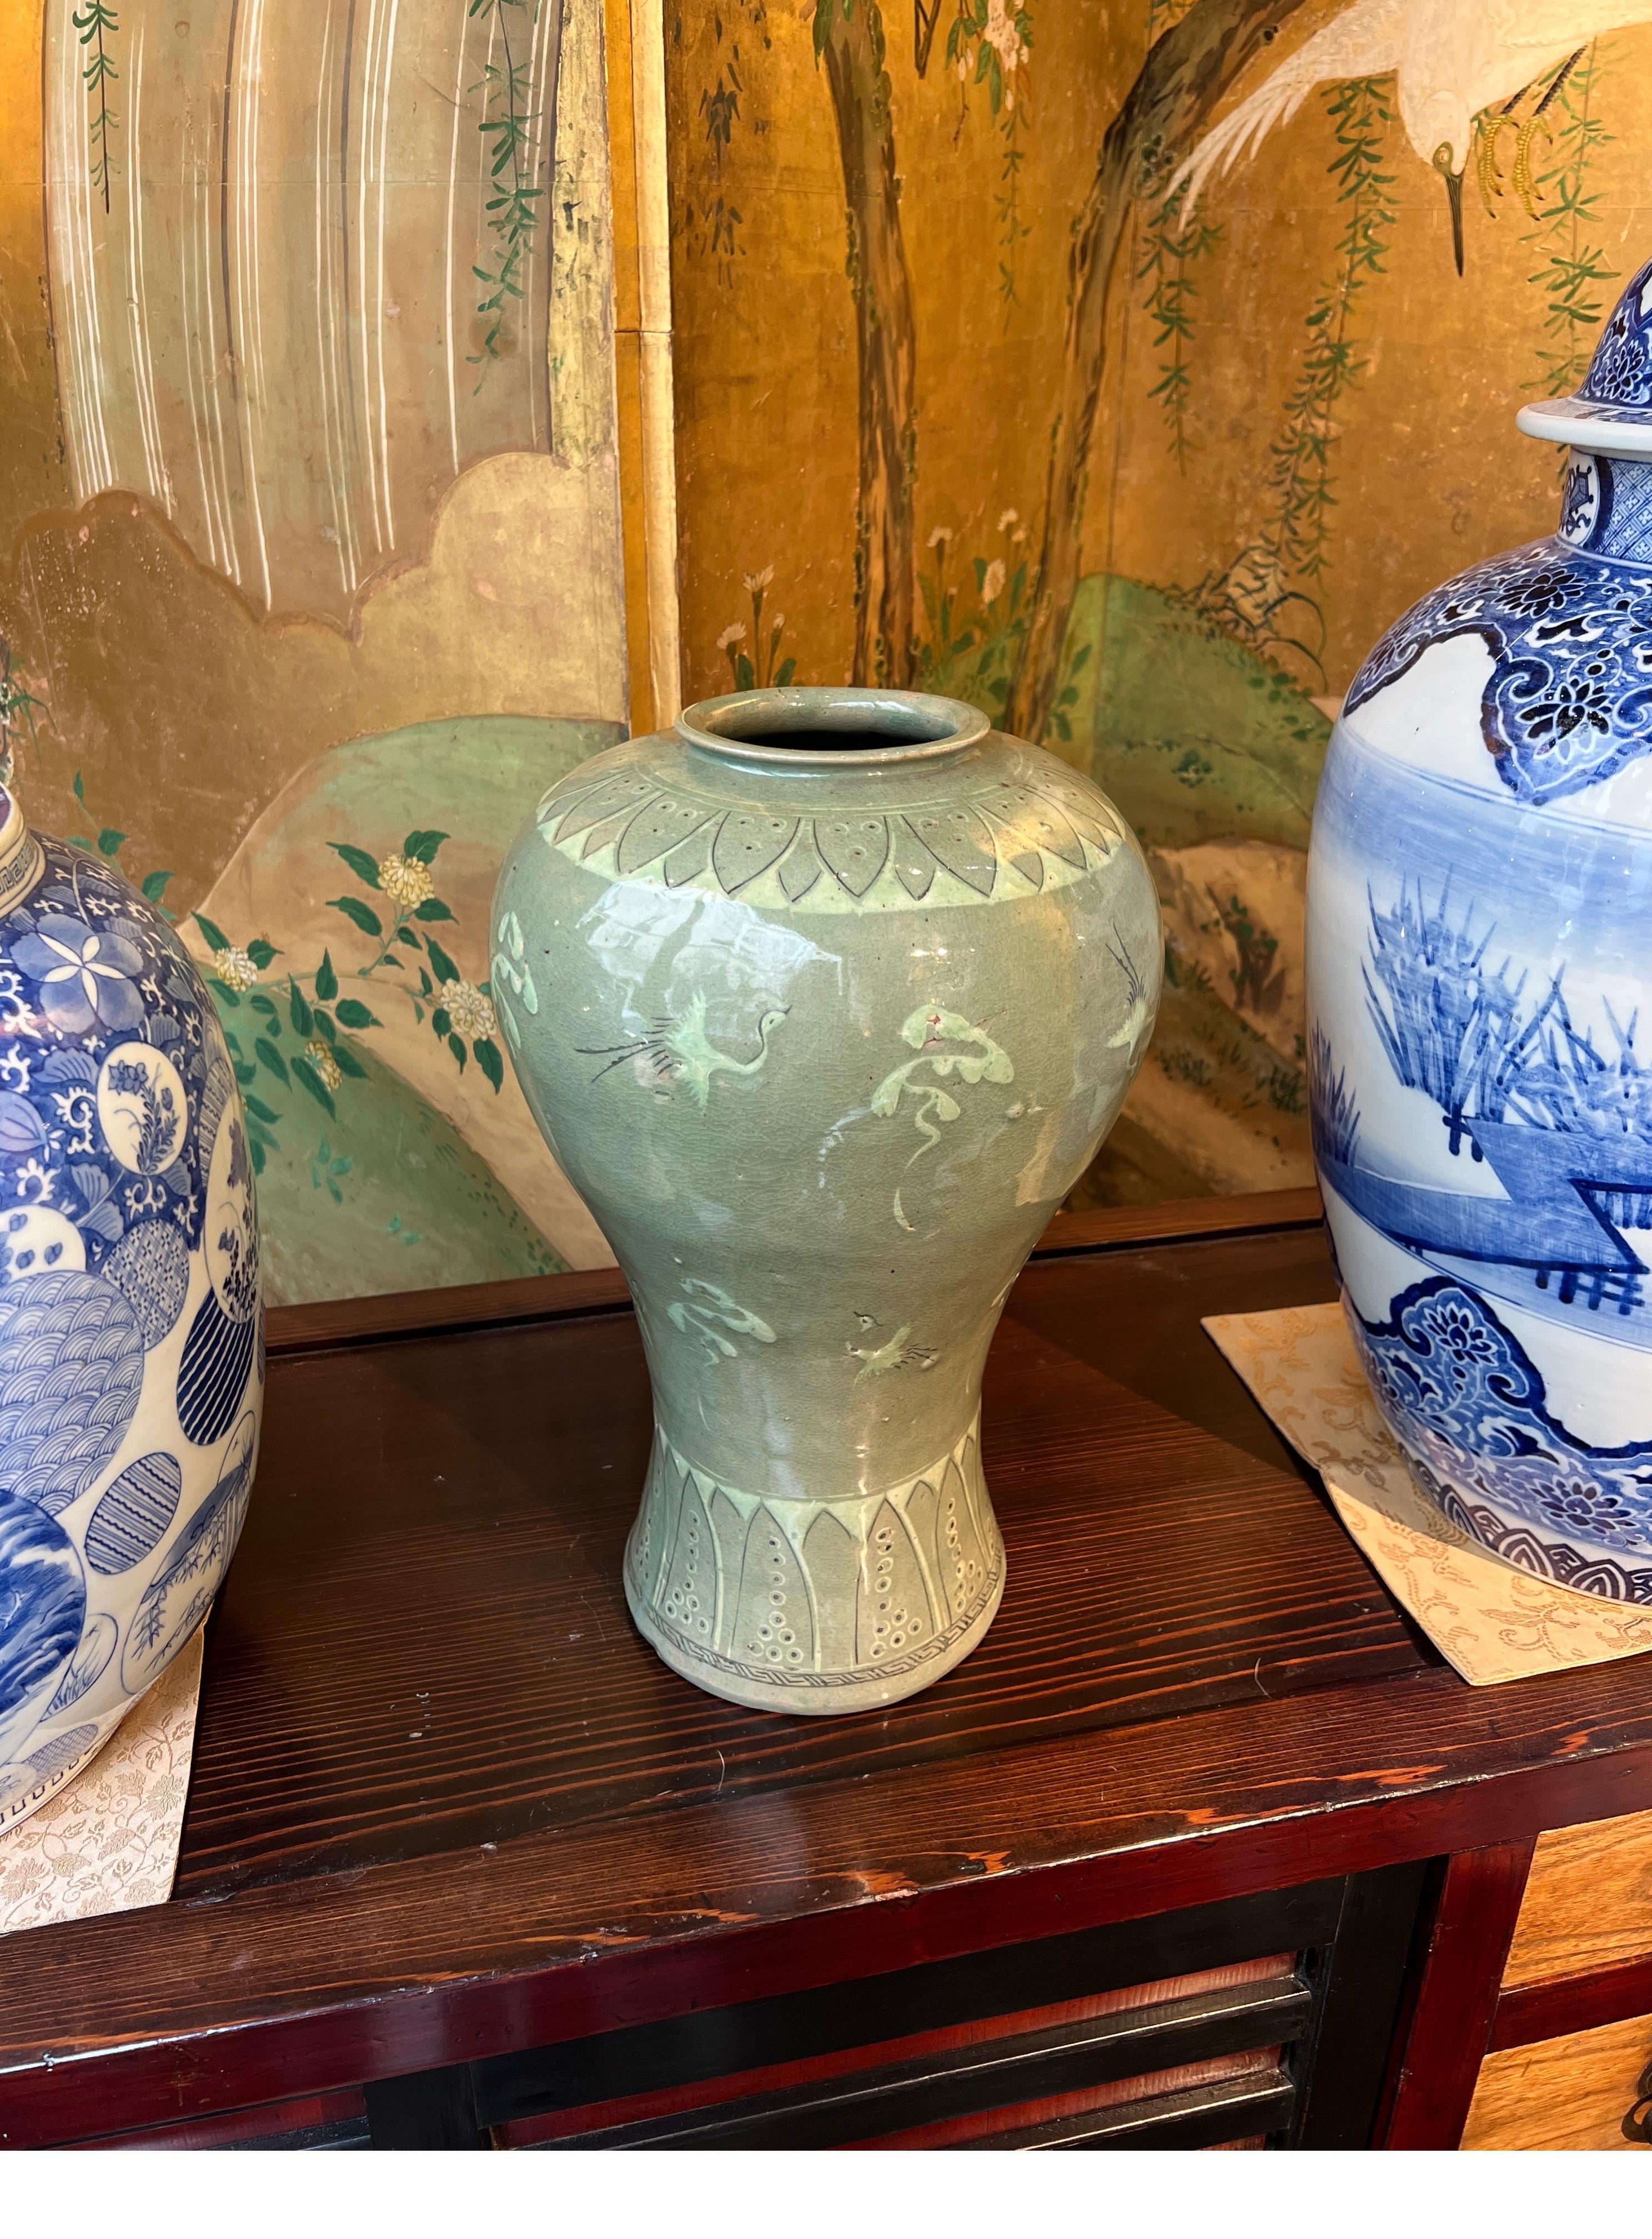 Grand vase coréen en céladon à décor de grues volantes et de nuages.
Quelques défauts de cuisson, comme il est d'usage dans ce type de céramique, mais pas d'ébréchures ni de lignes de démarcation.
Très belle couleur de glaçure céladon typique de la